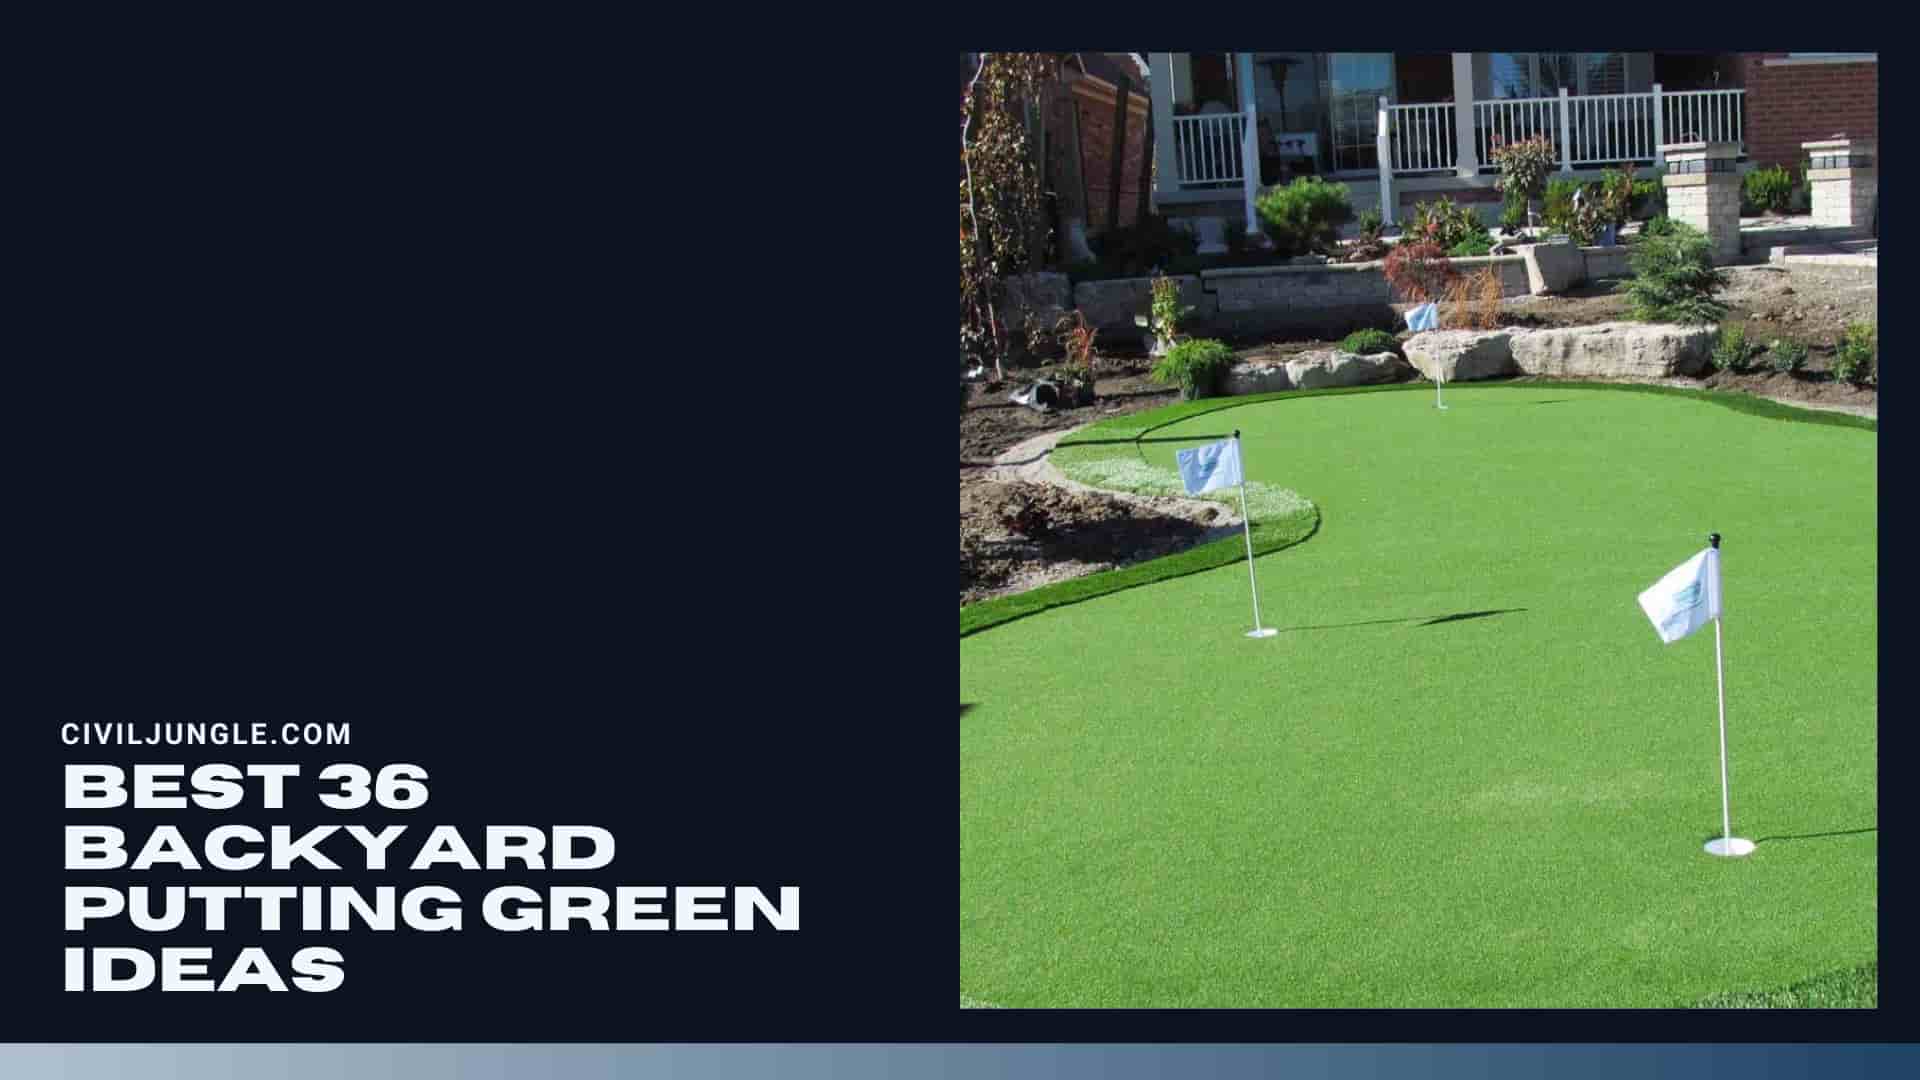 Best 36 Backyard Putting Green Ideas